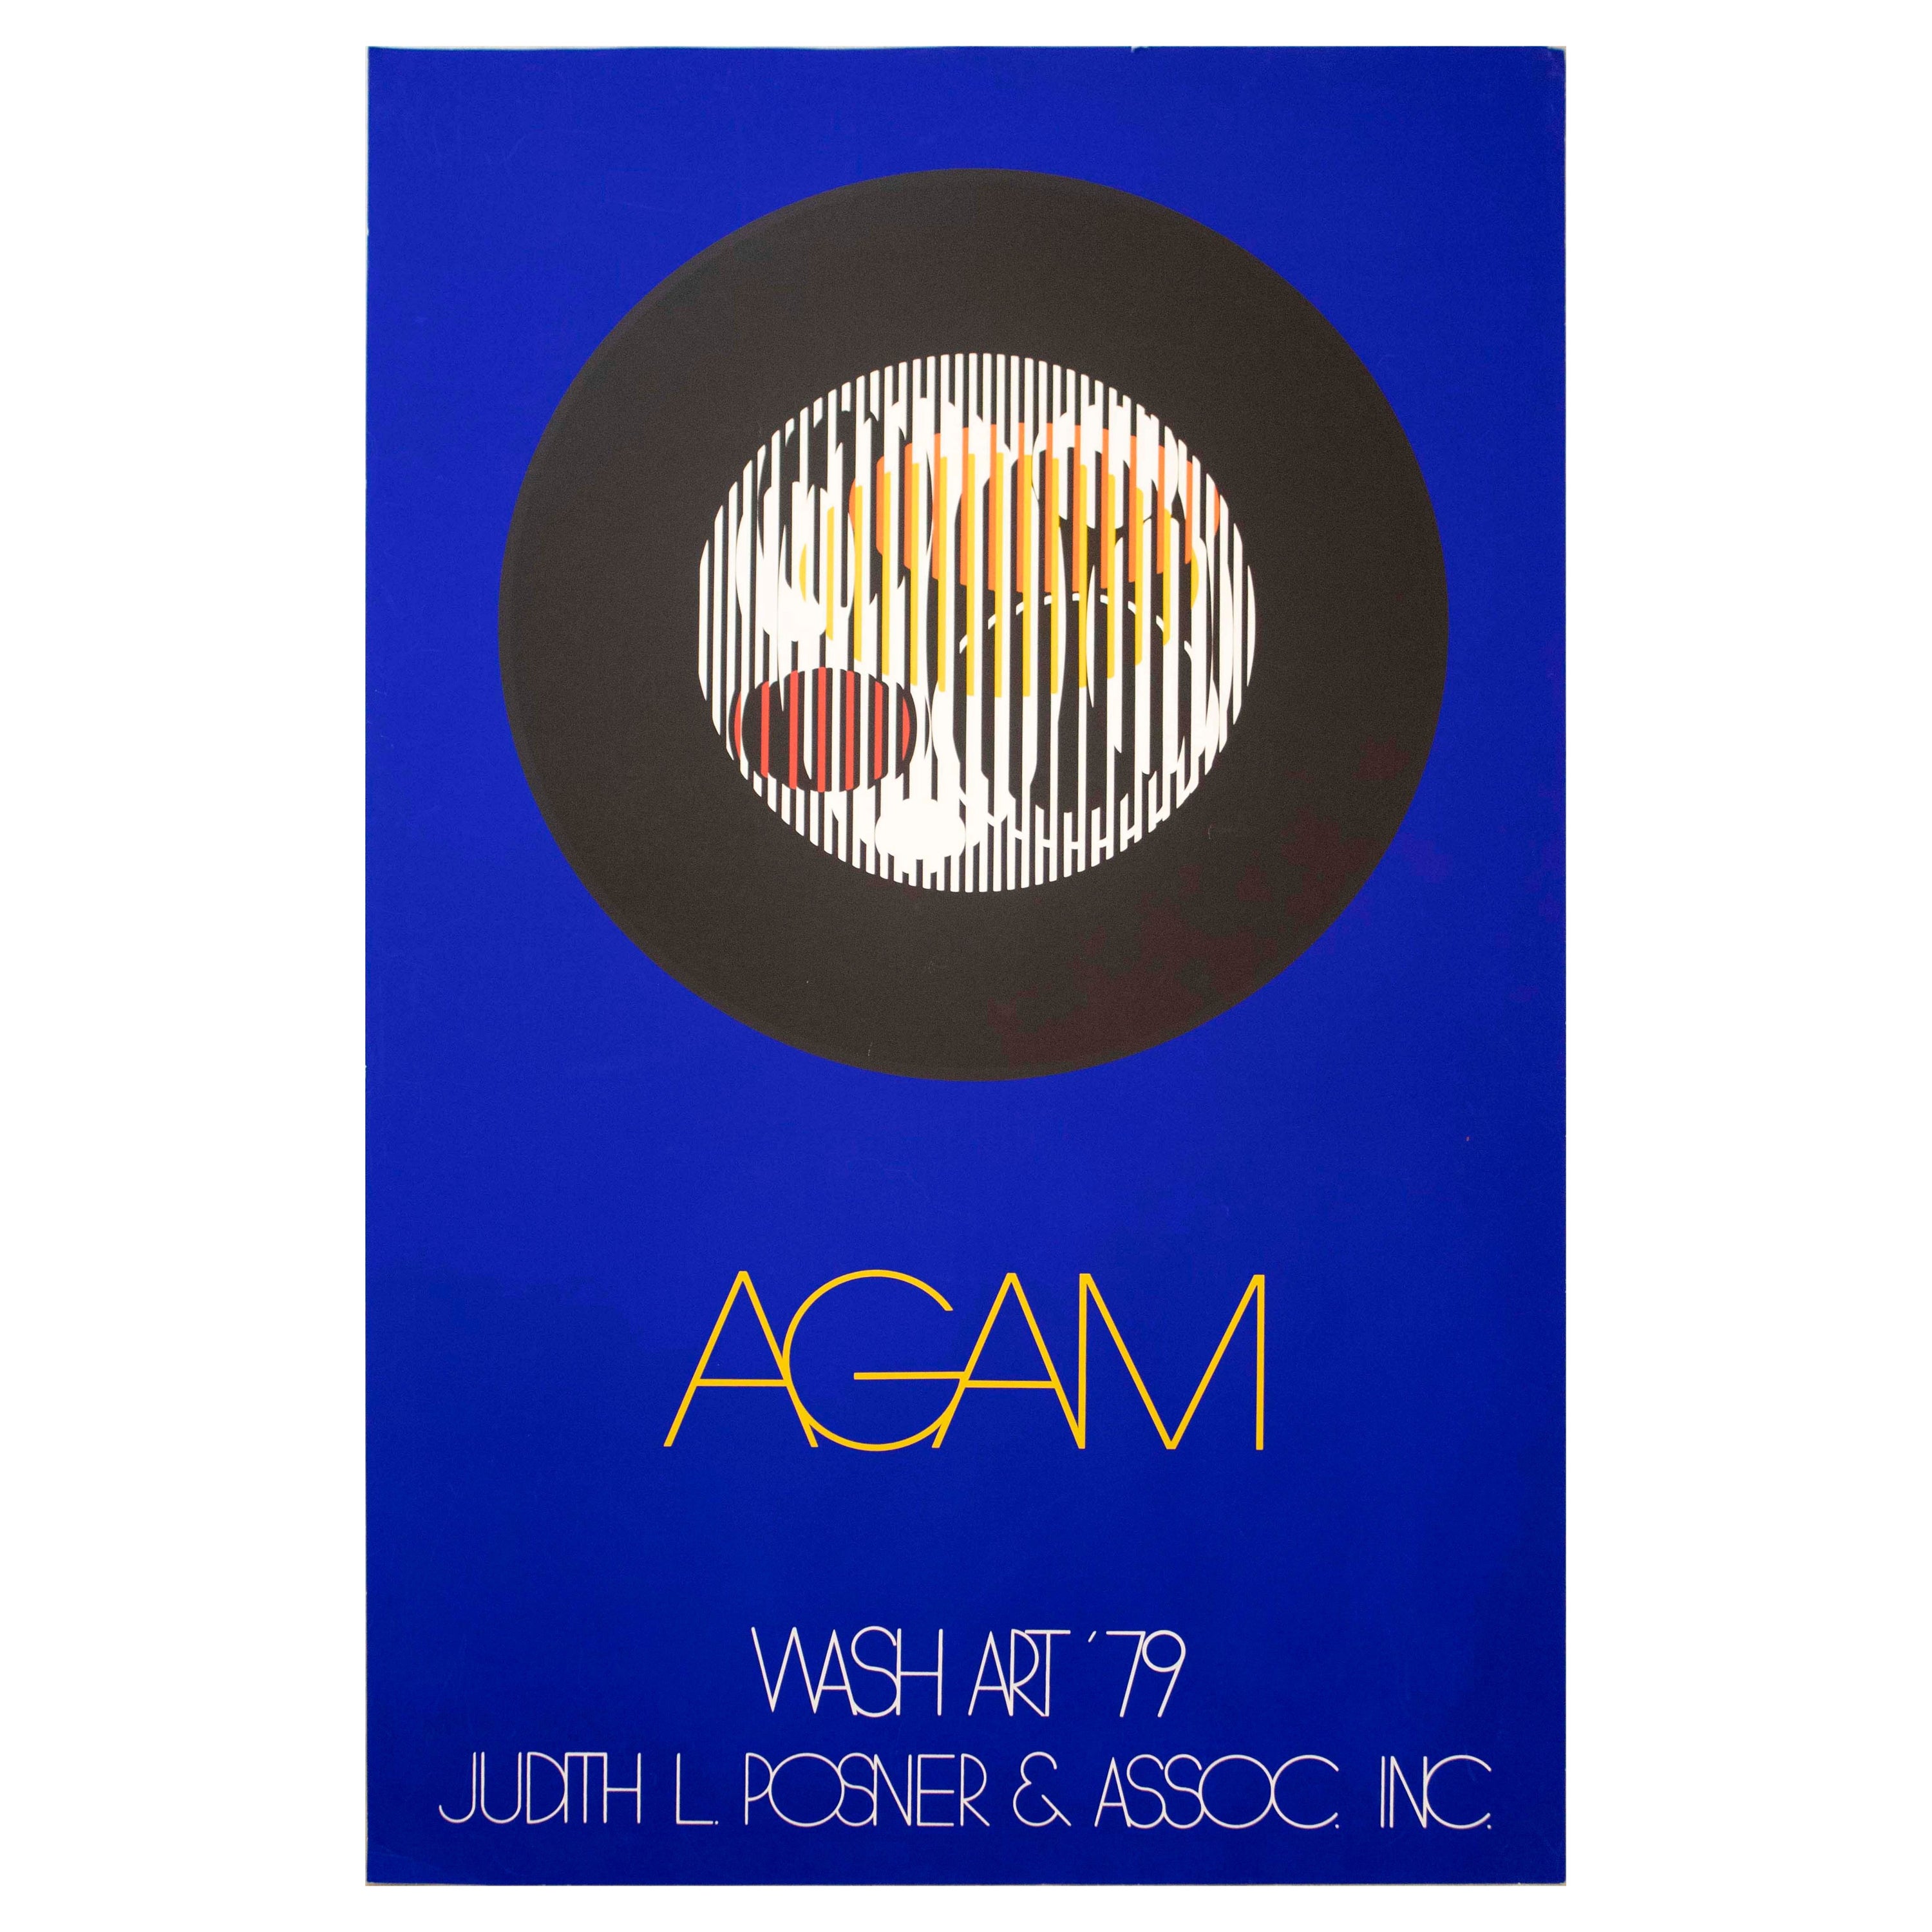 Yaacov Agam Wash Art 79 Judith L Posner & Assoc Inc